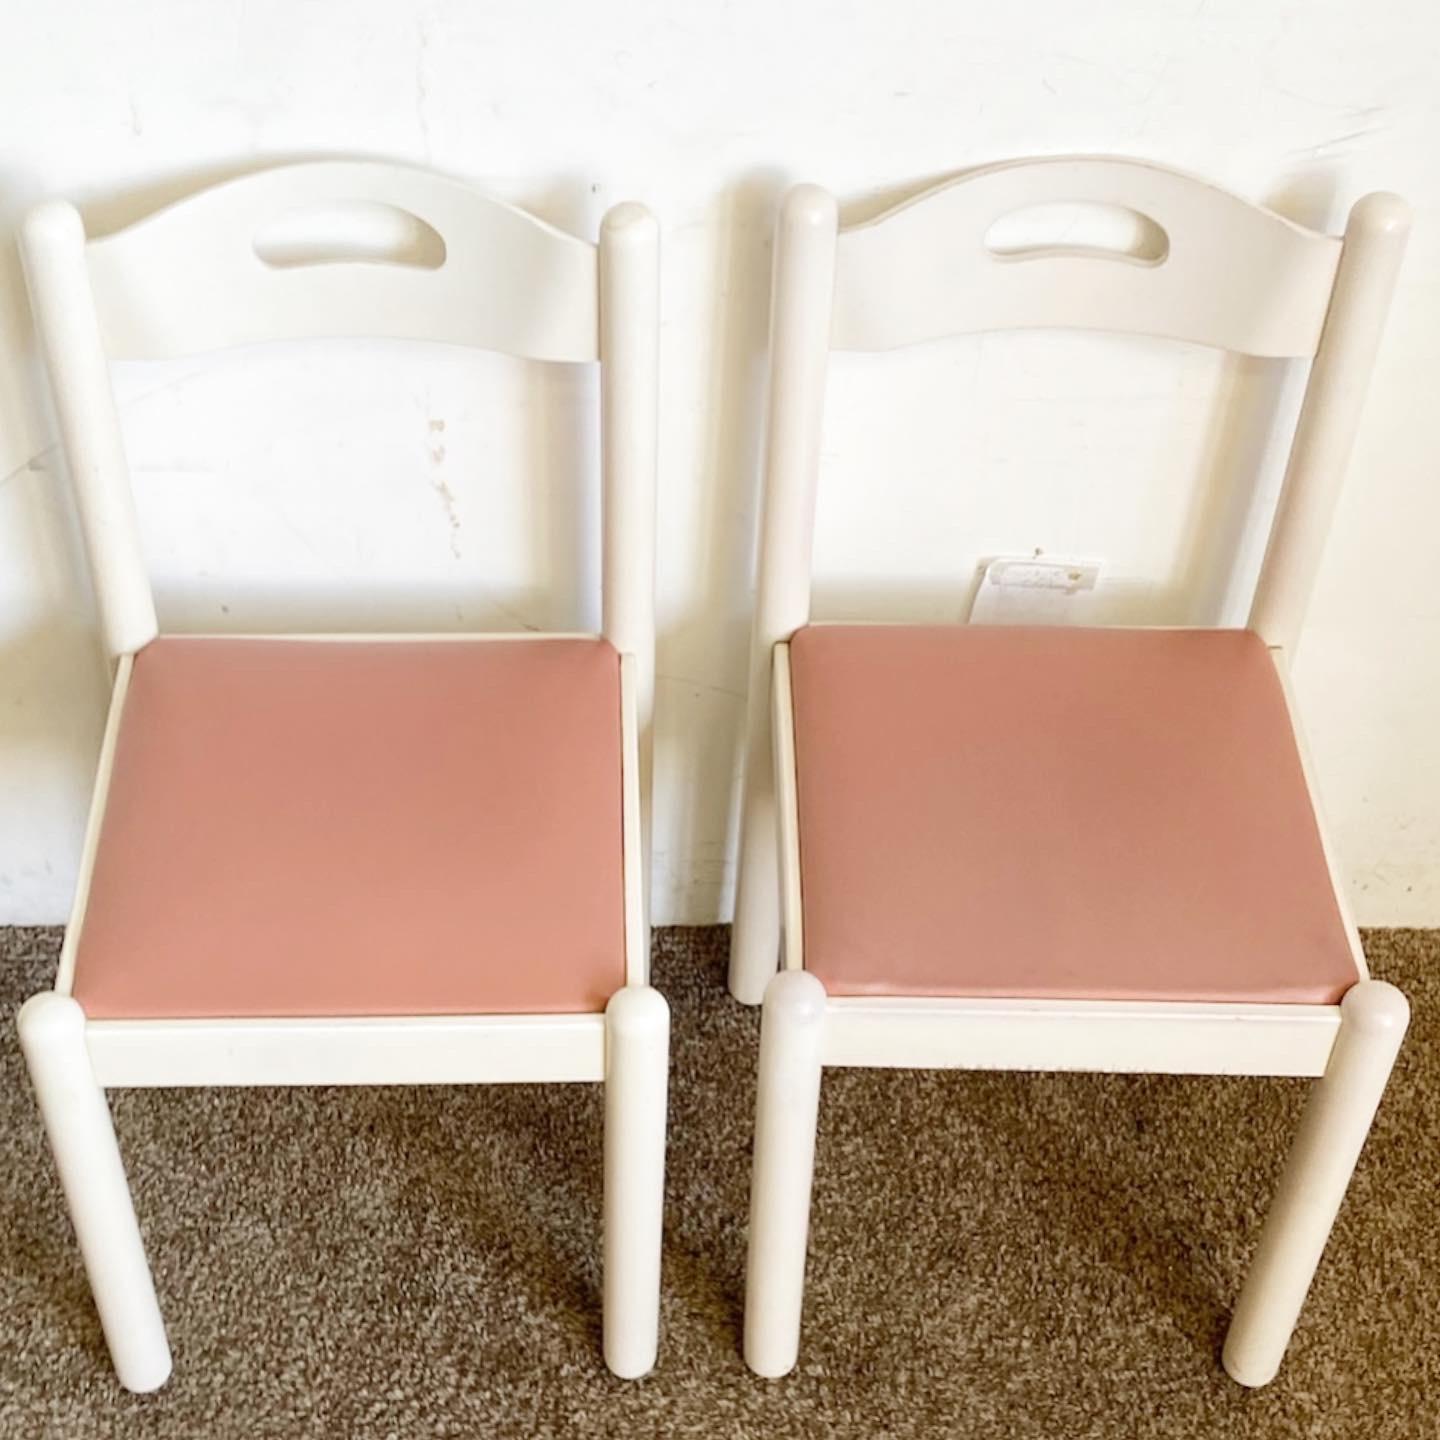 Élevez votre salle à manger avec les chaises de style Carimate blanches et roses. Ce lot de 4 chaises combine un cadre blanc moderne avec des coussins roses vibrants, offrant à la fois style et confort.
Usure mineure de la finition, comme le